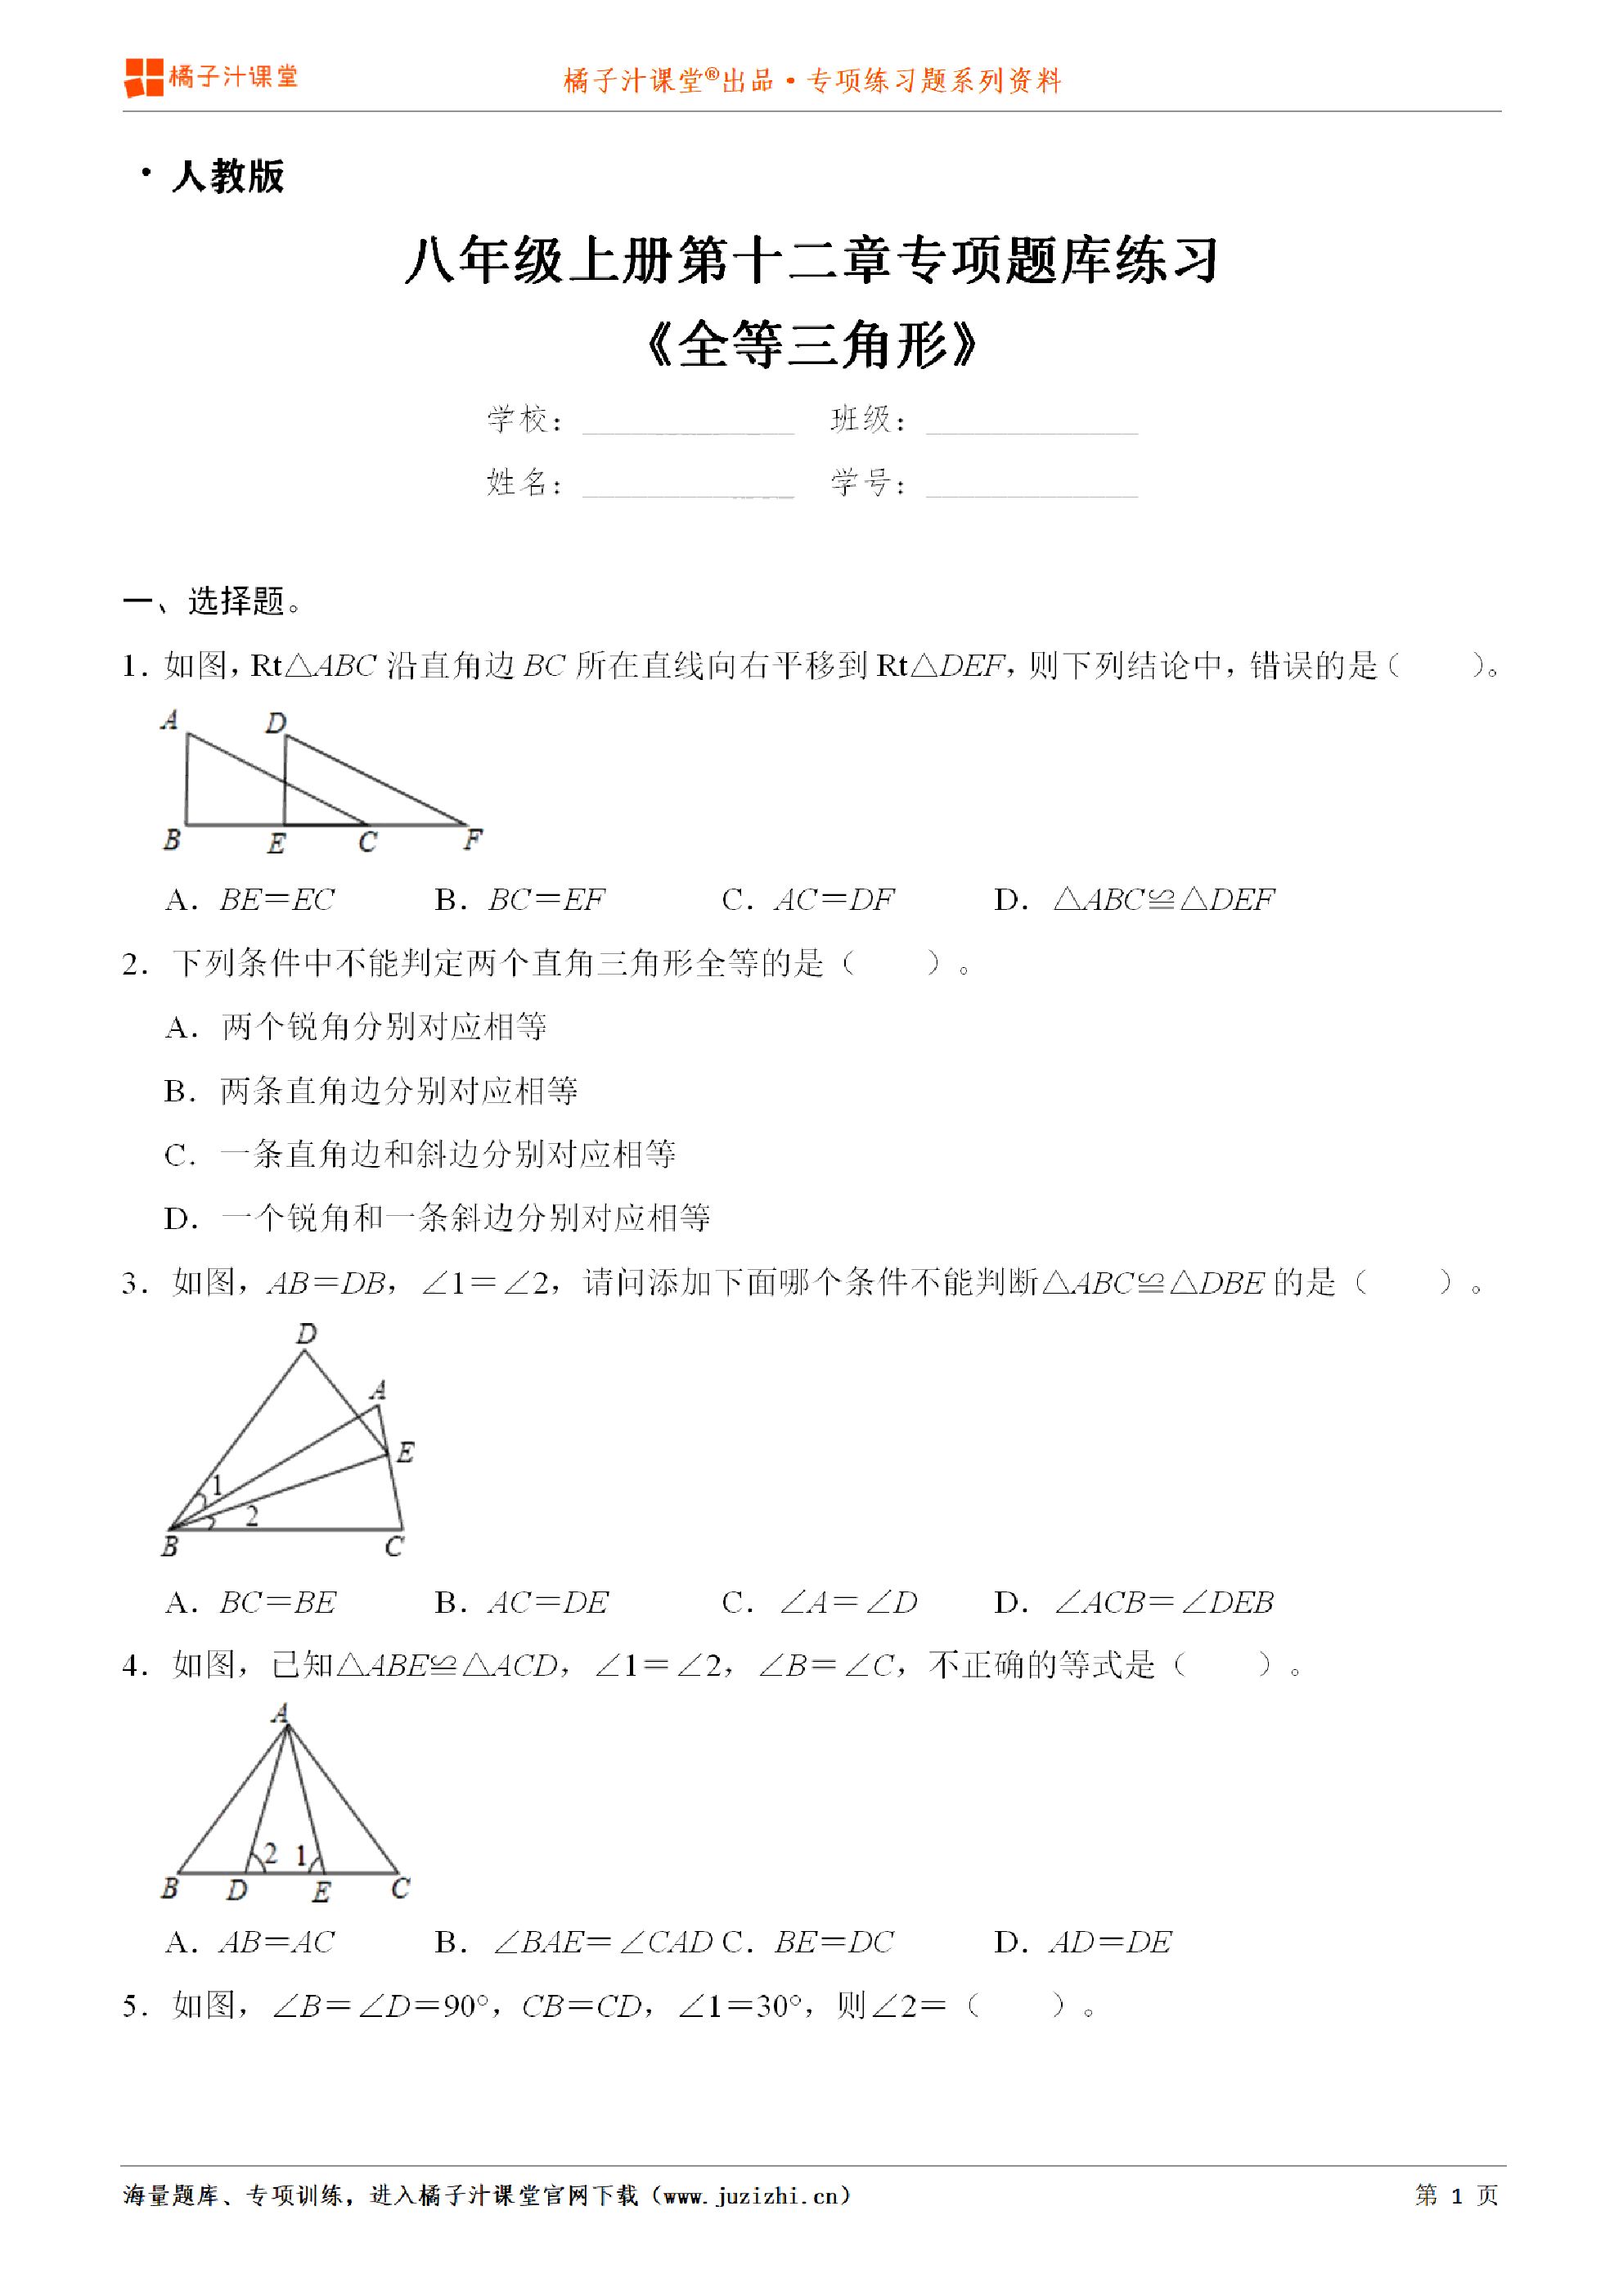 【人教版数学】八年级上册第十二章《全等三角形》专项练习题